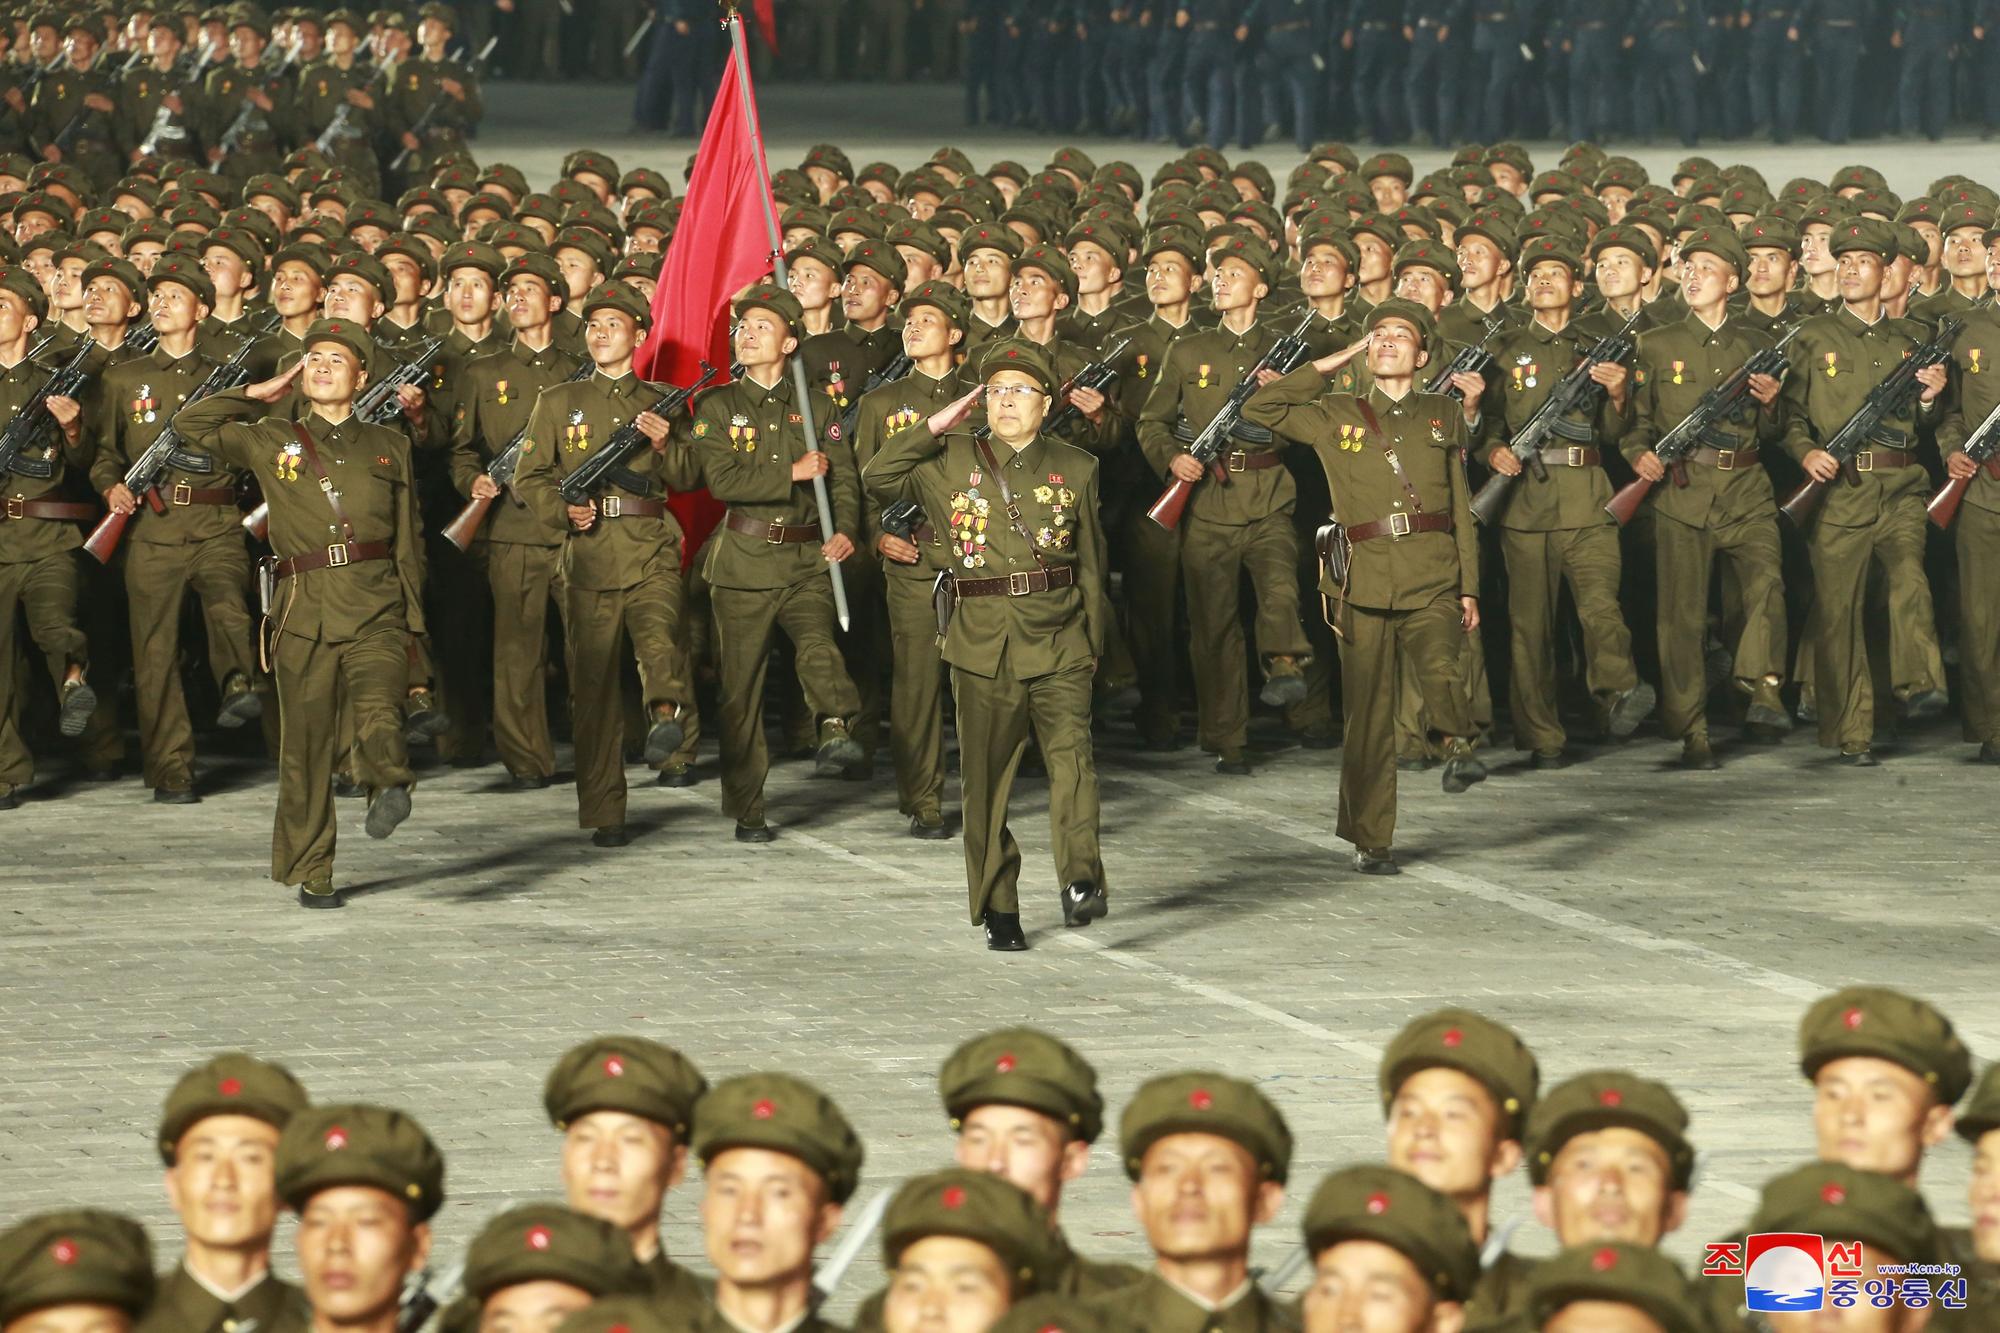 Desfile militar en Corea del Norte por el 73 aniversario del país